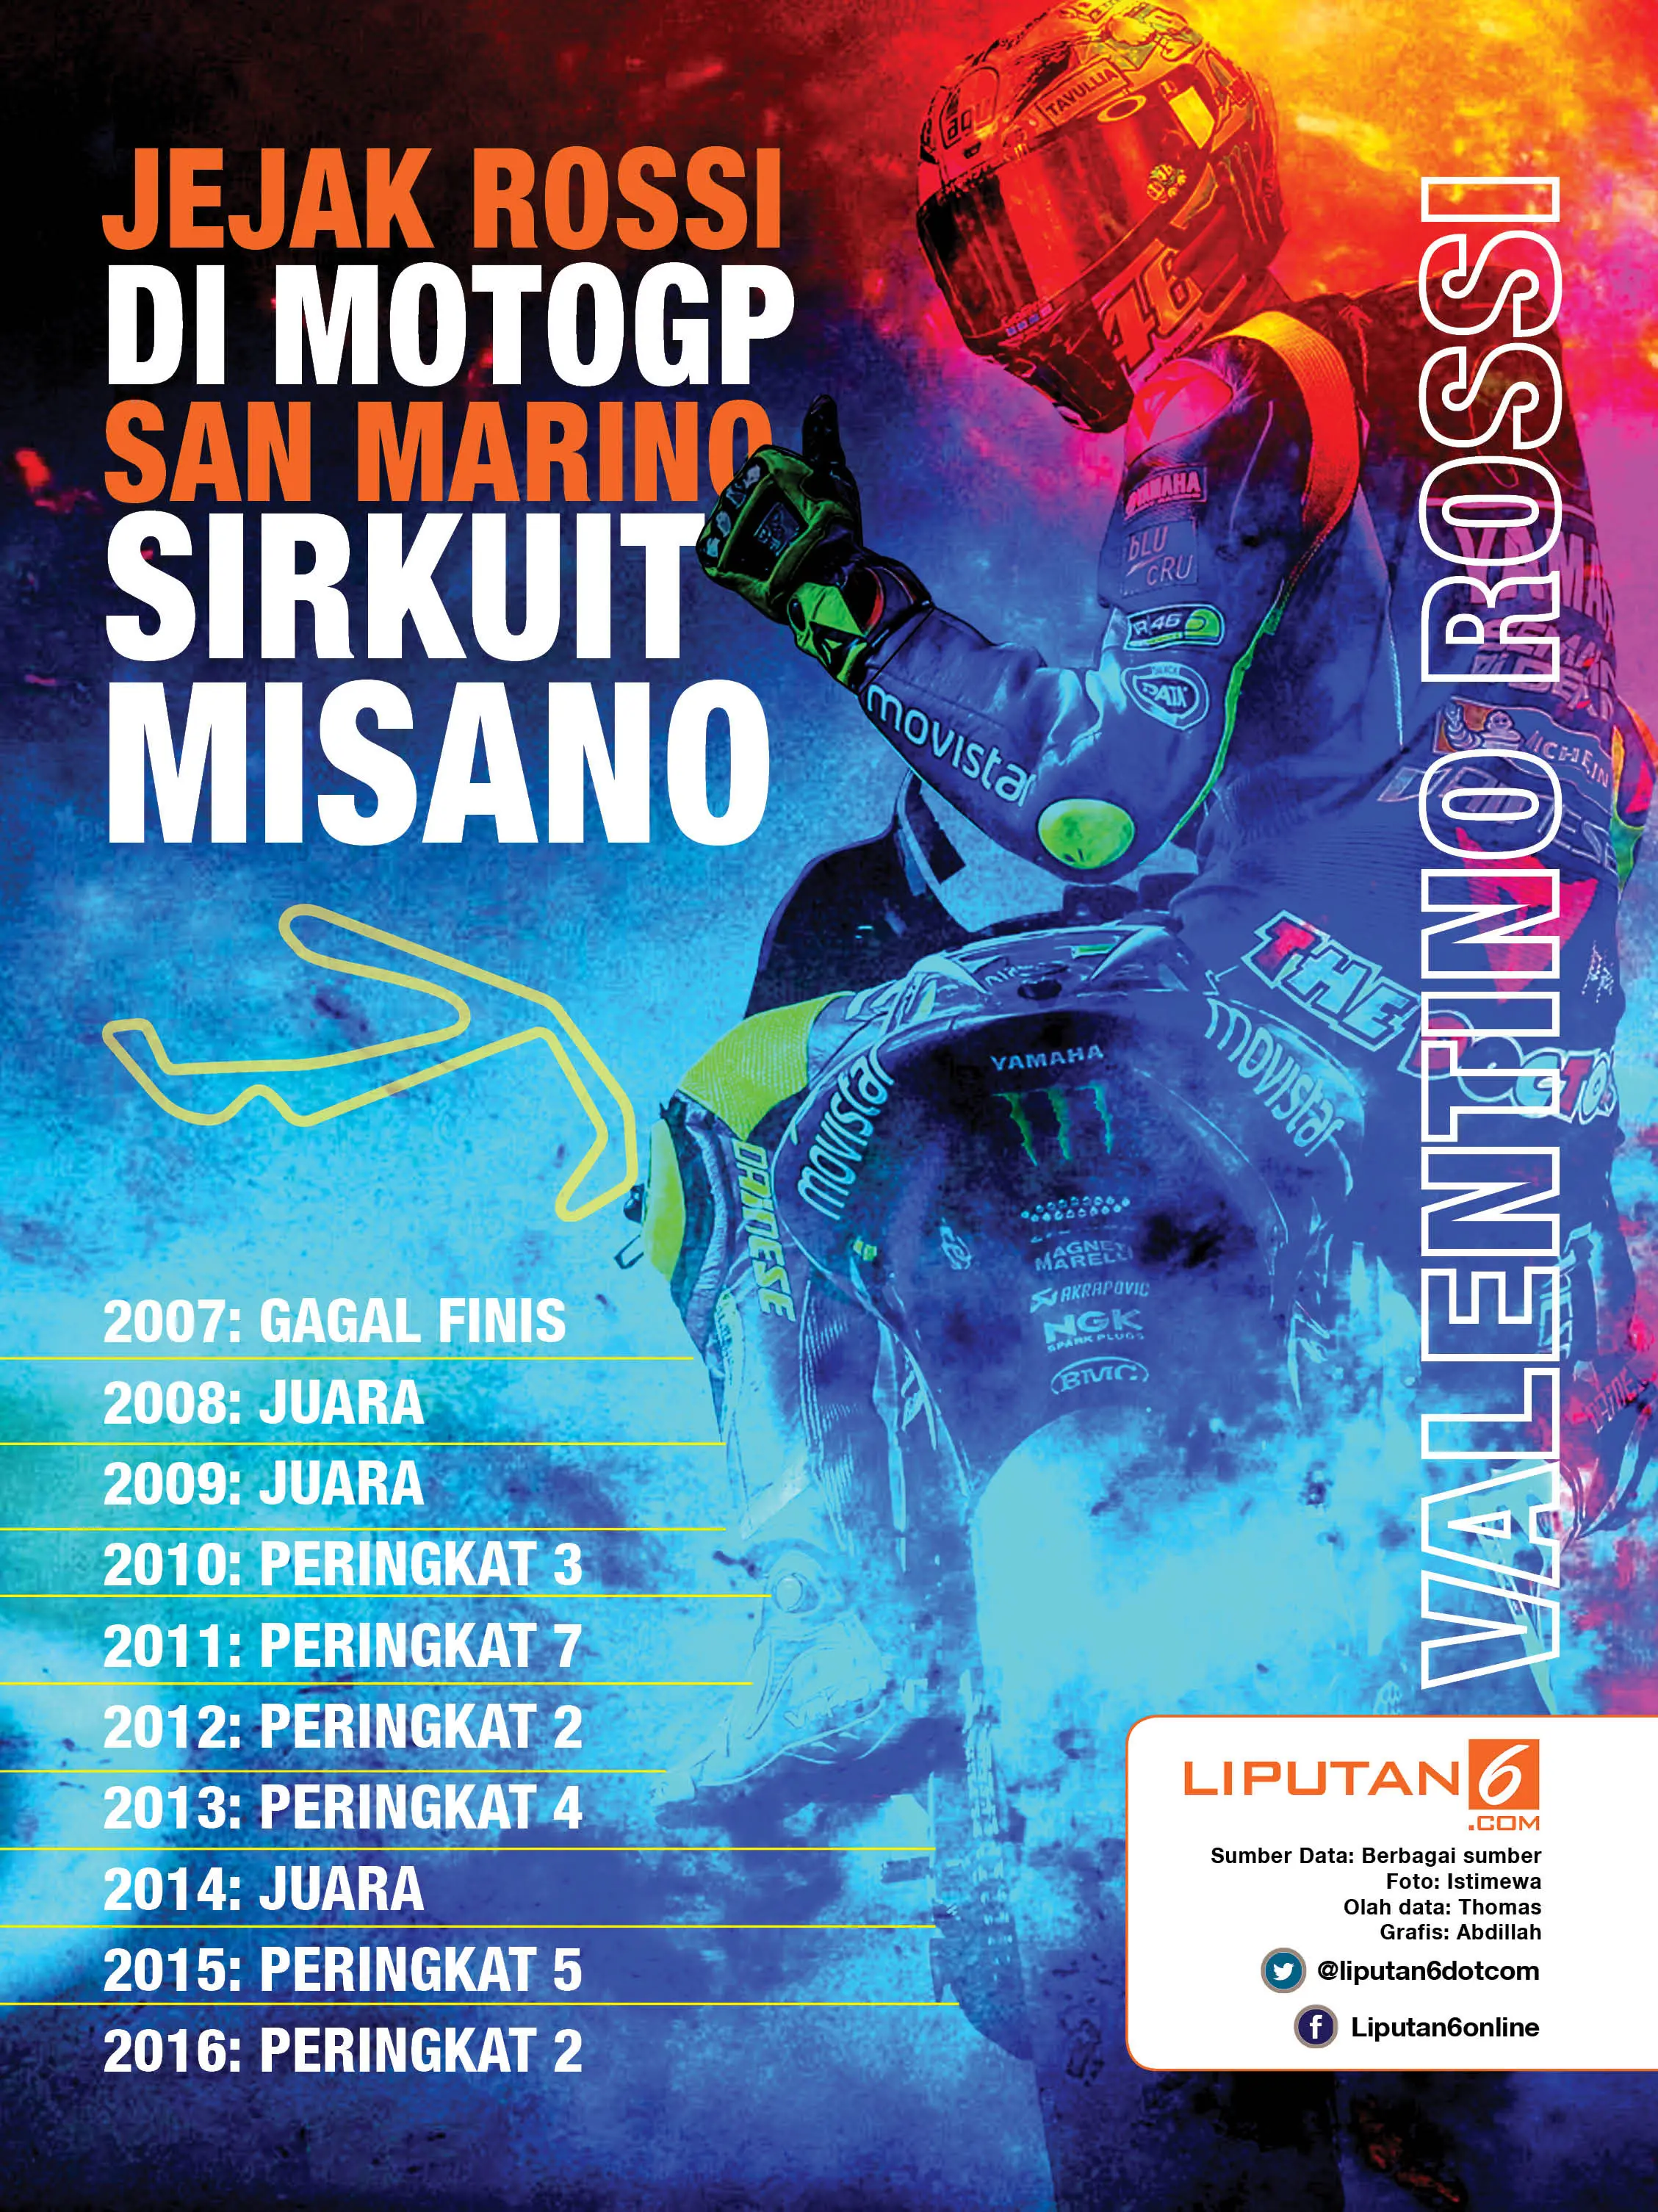 Jejak Valentino Rossi pada MotoGP San Marino di Sirkuit Misano. (Liputan6.com/Abdillah)